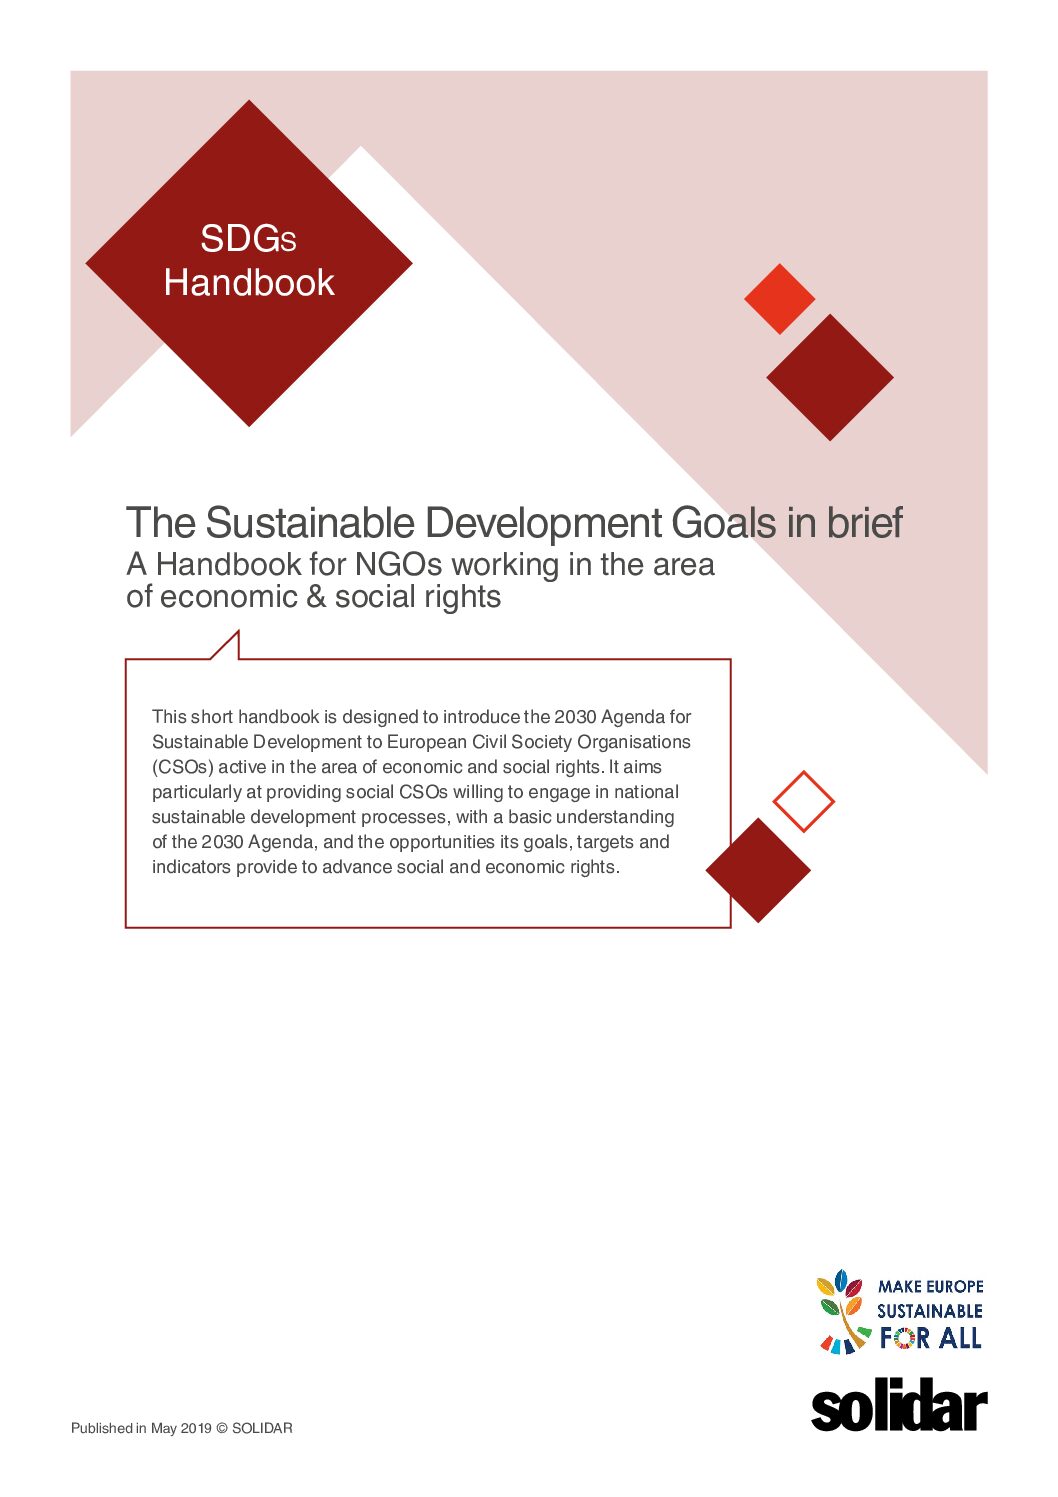 SDGs Handbook: The Sustainable Development Goals in brief